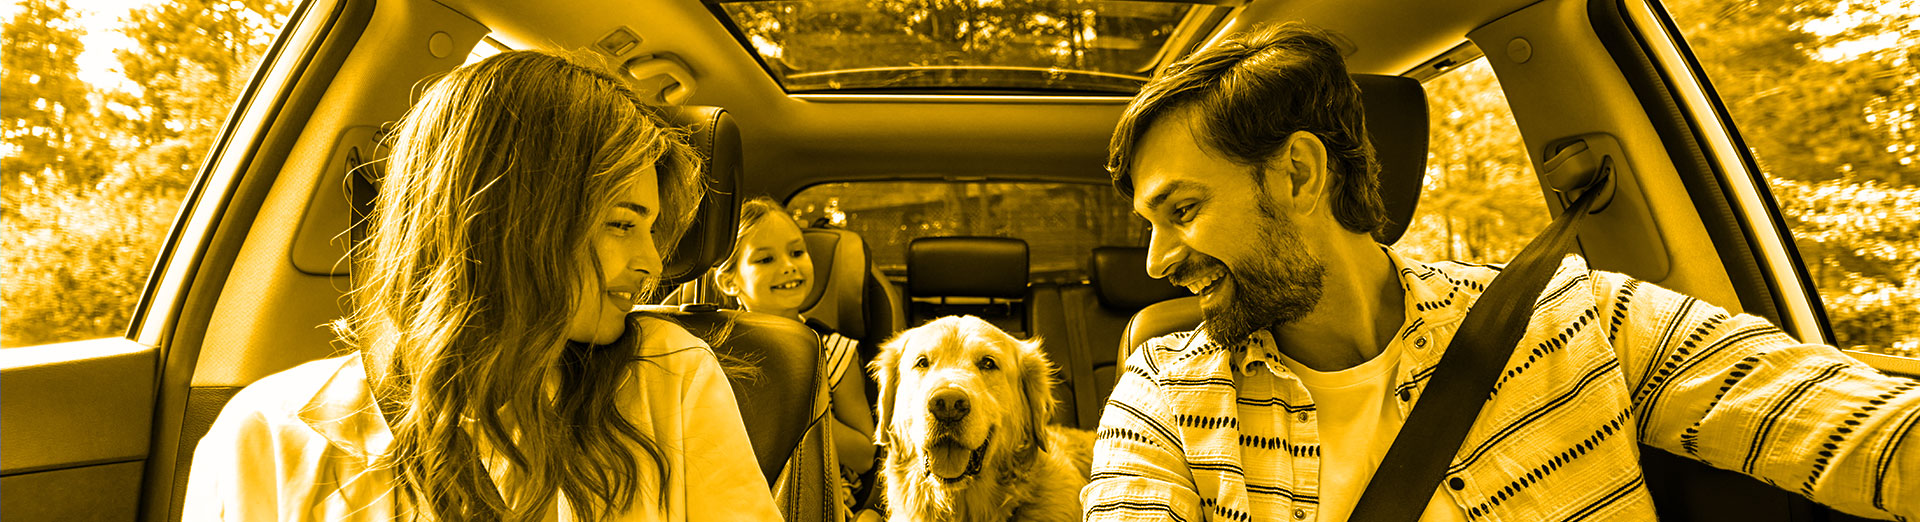 Rodzina w podróży, w samochodzie, z psem.